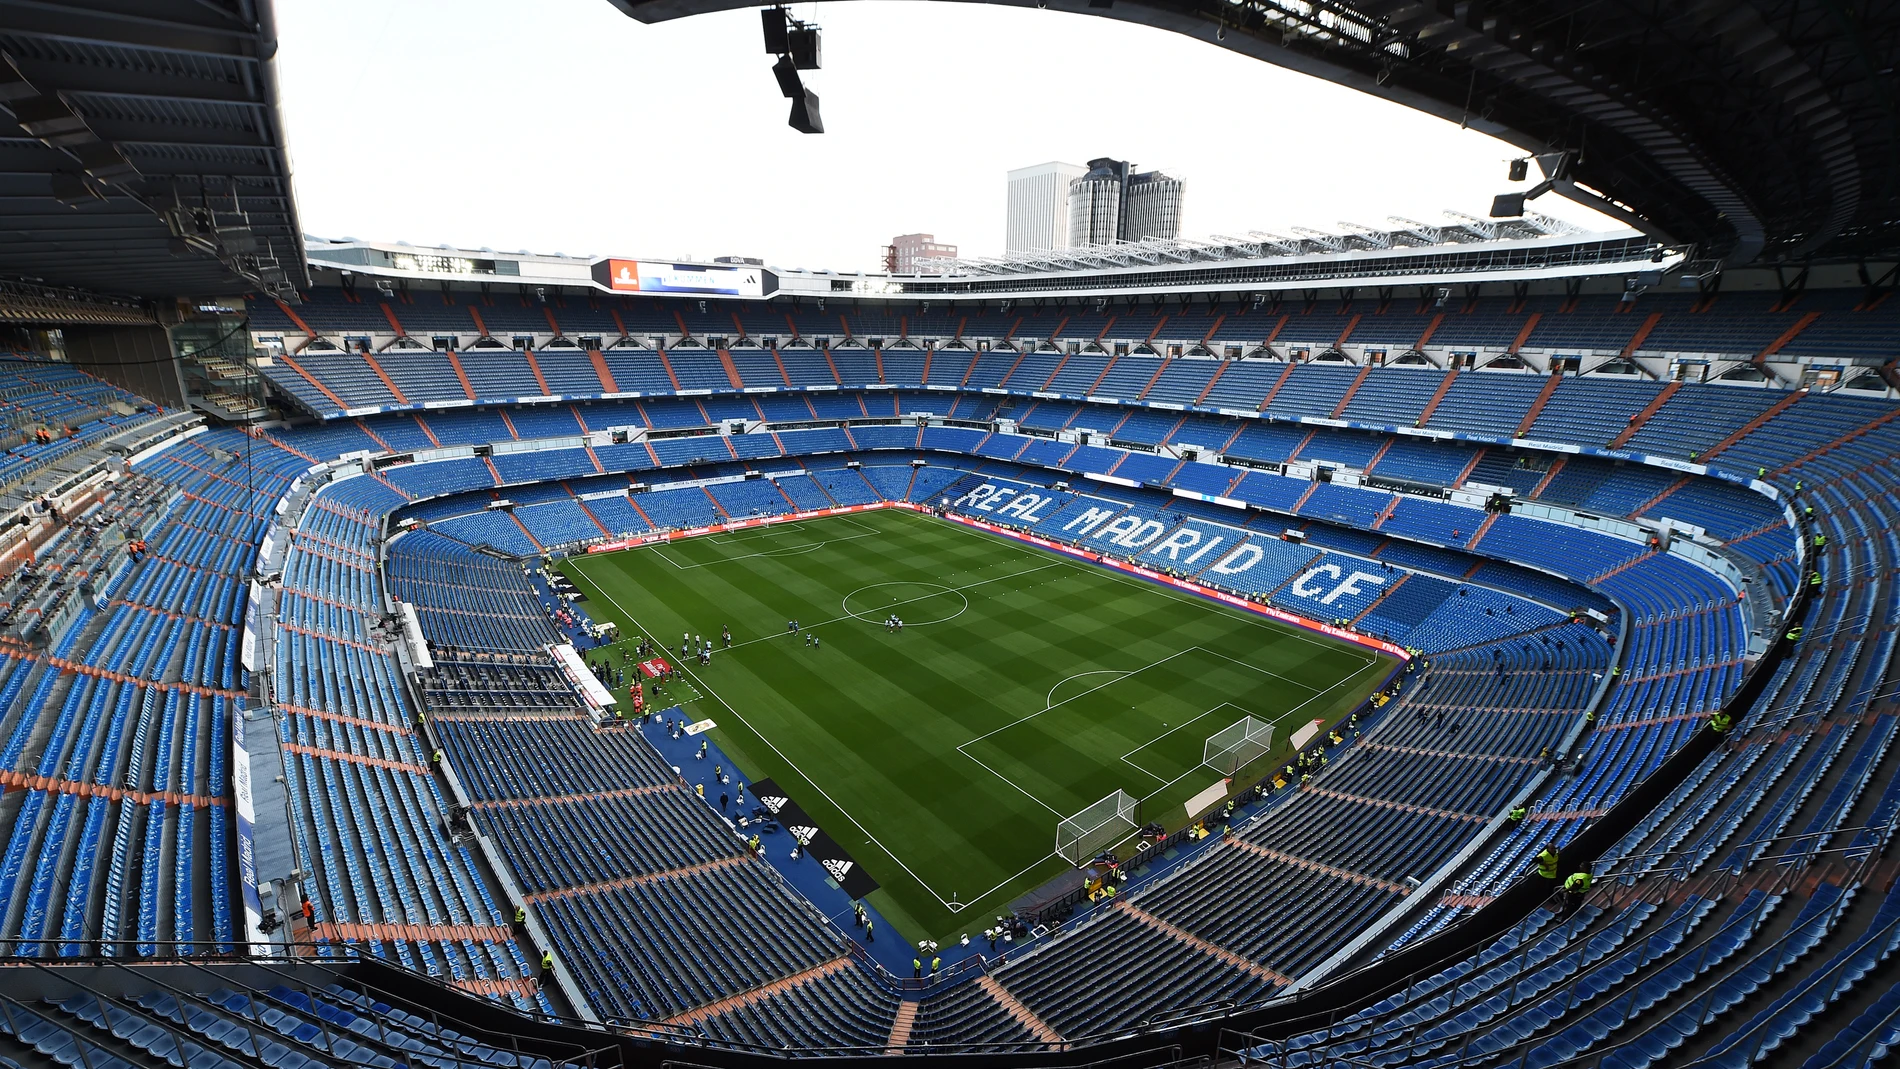 Abierto Desde Chirrido El Real Madrid convierte el Santiago Bernabéu en un centro de  aprovisionamiento